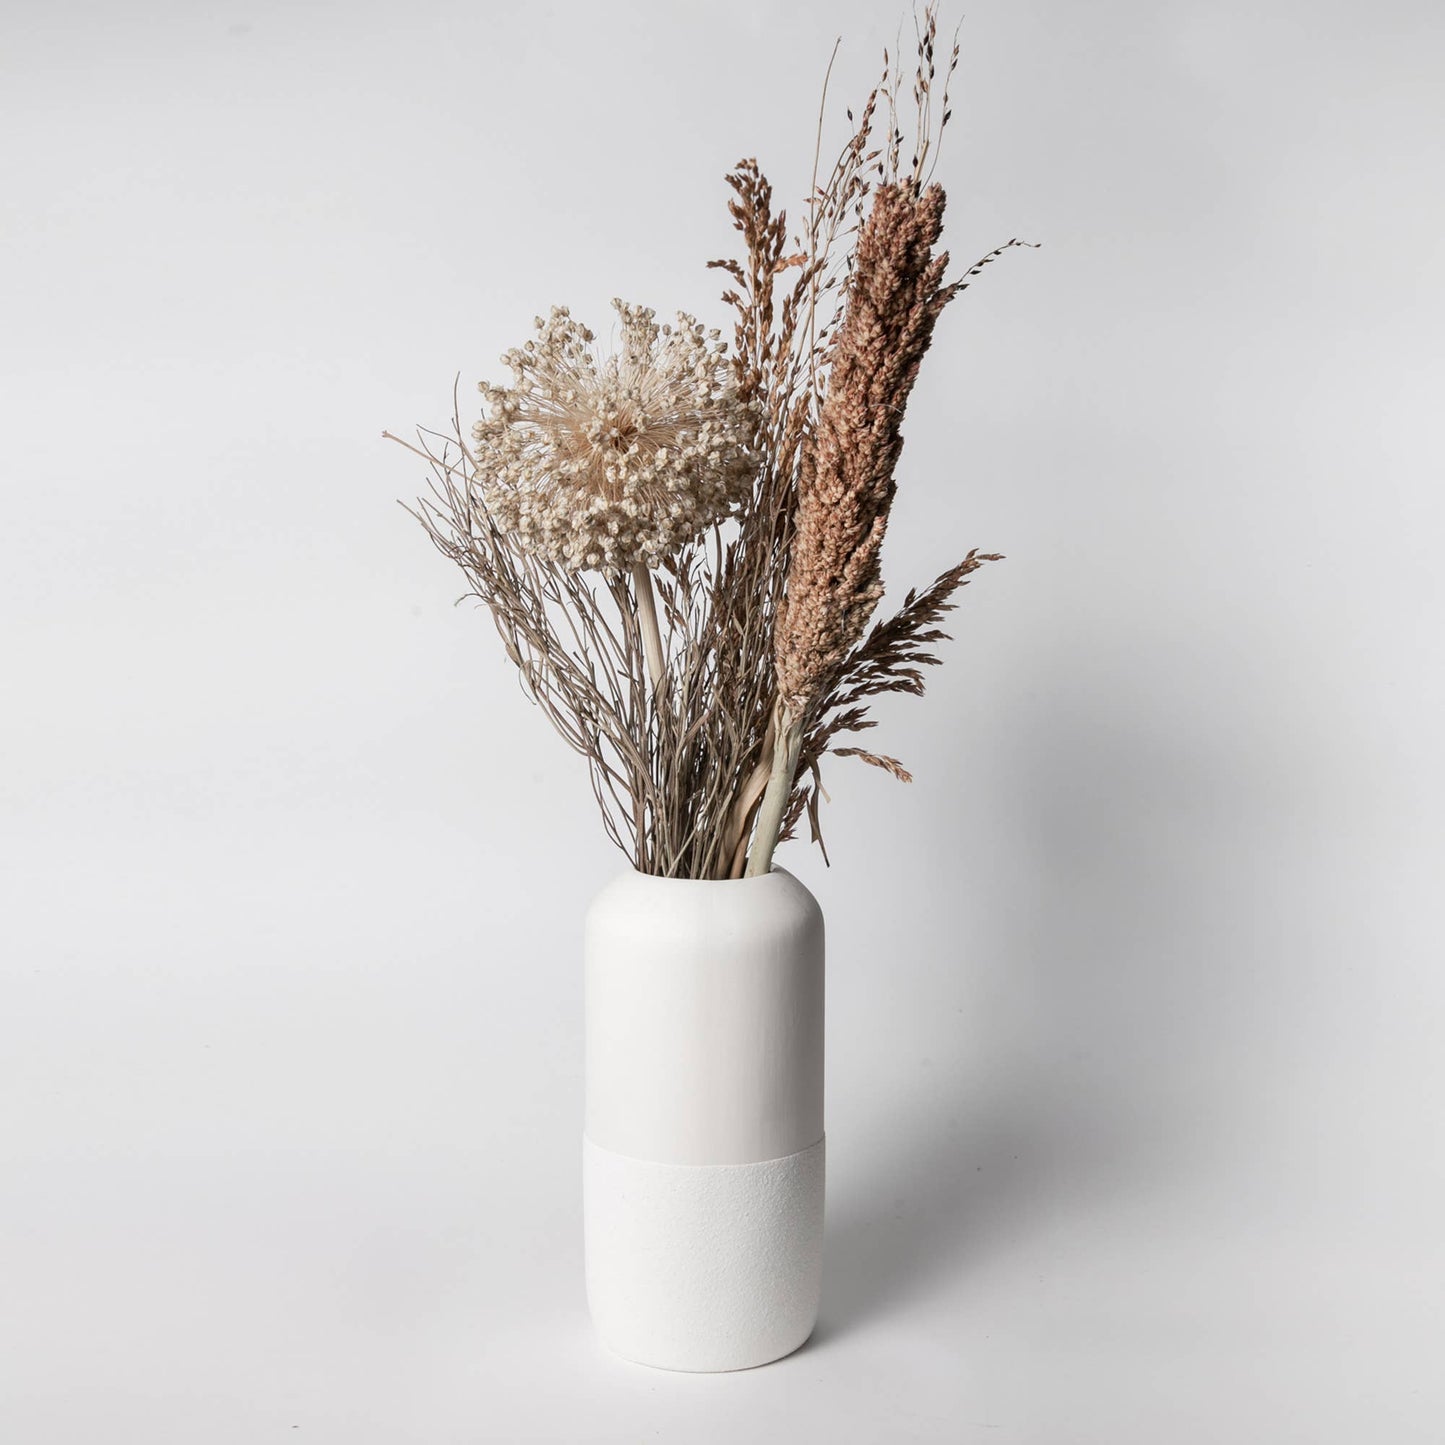 234 - Ceramic Vase